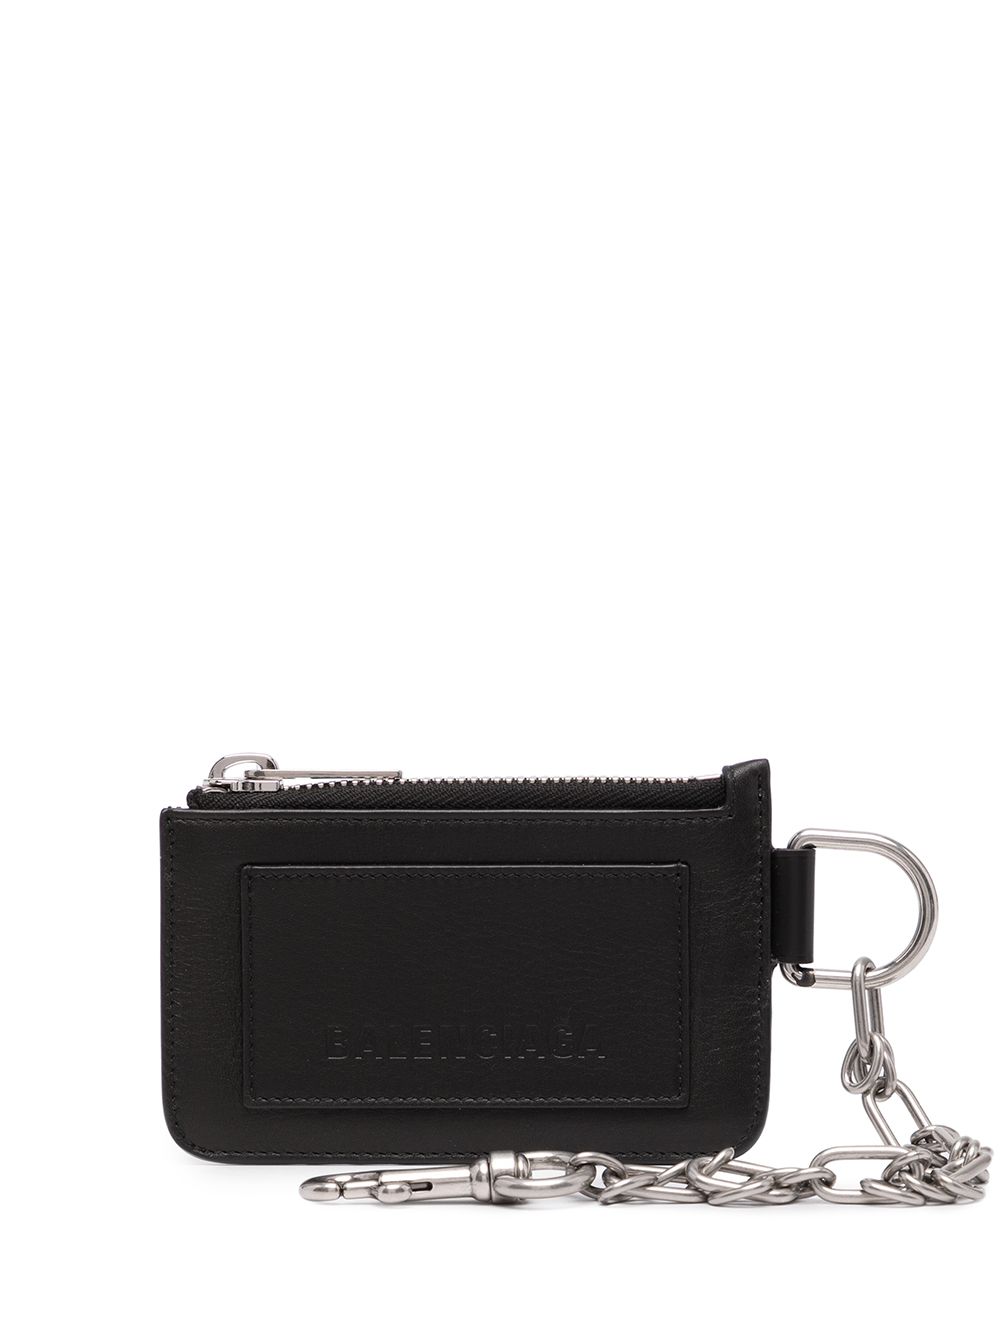 фото Balenciaga кошелек с цепочкой